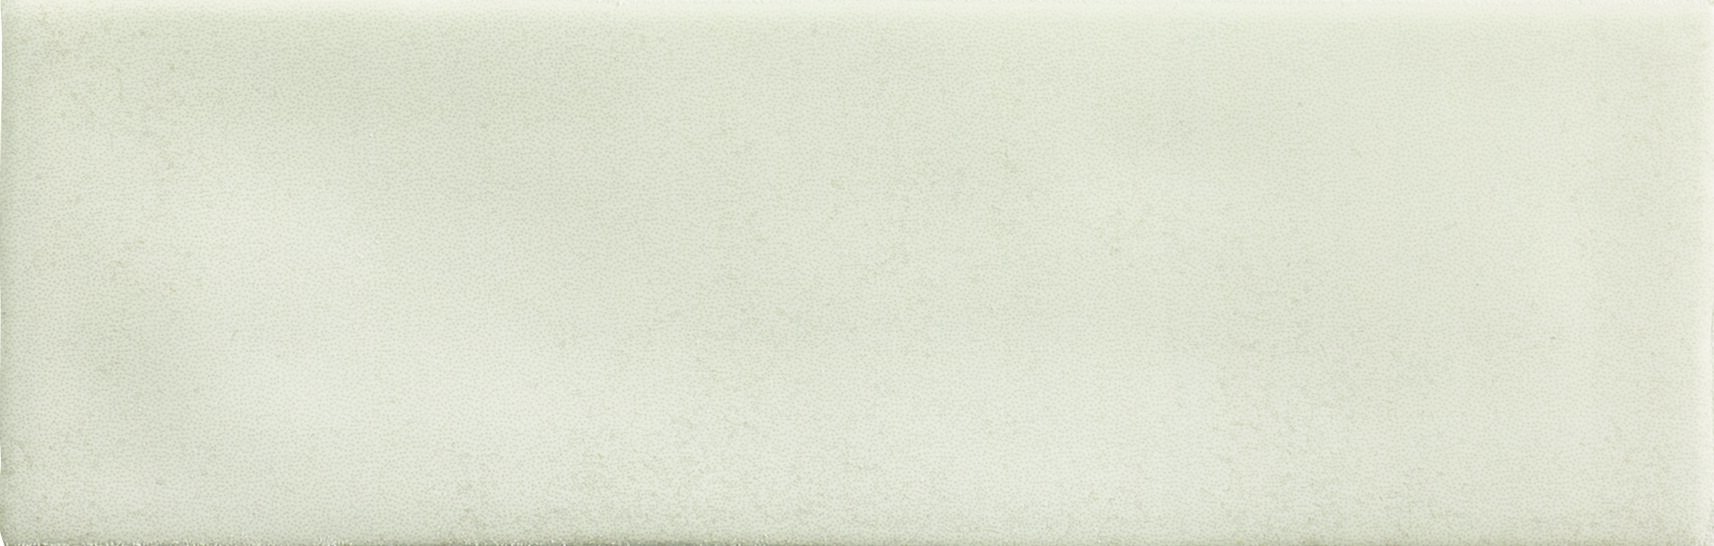 Керамическая плитка Ape Ceramica Плитка Toscana Cotton 6,5х20 